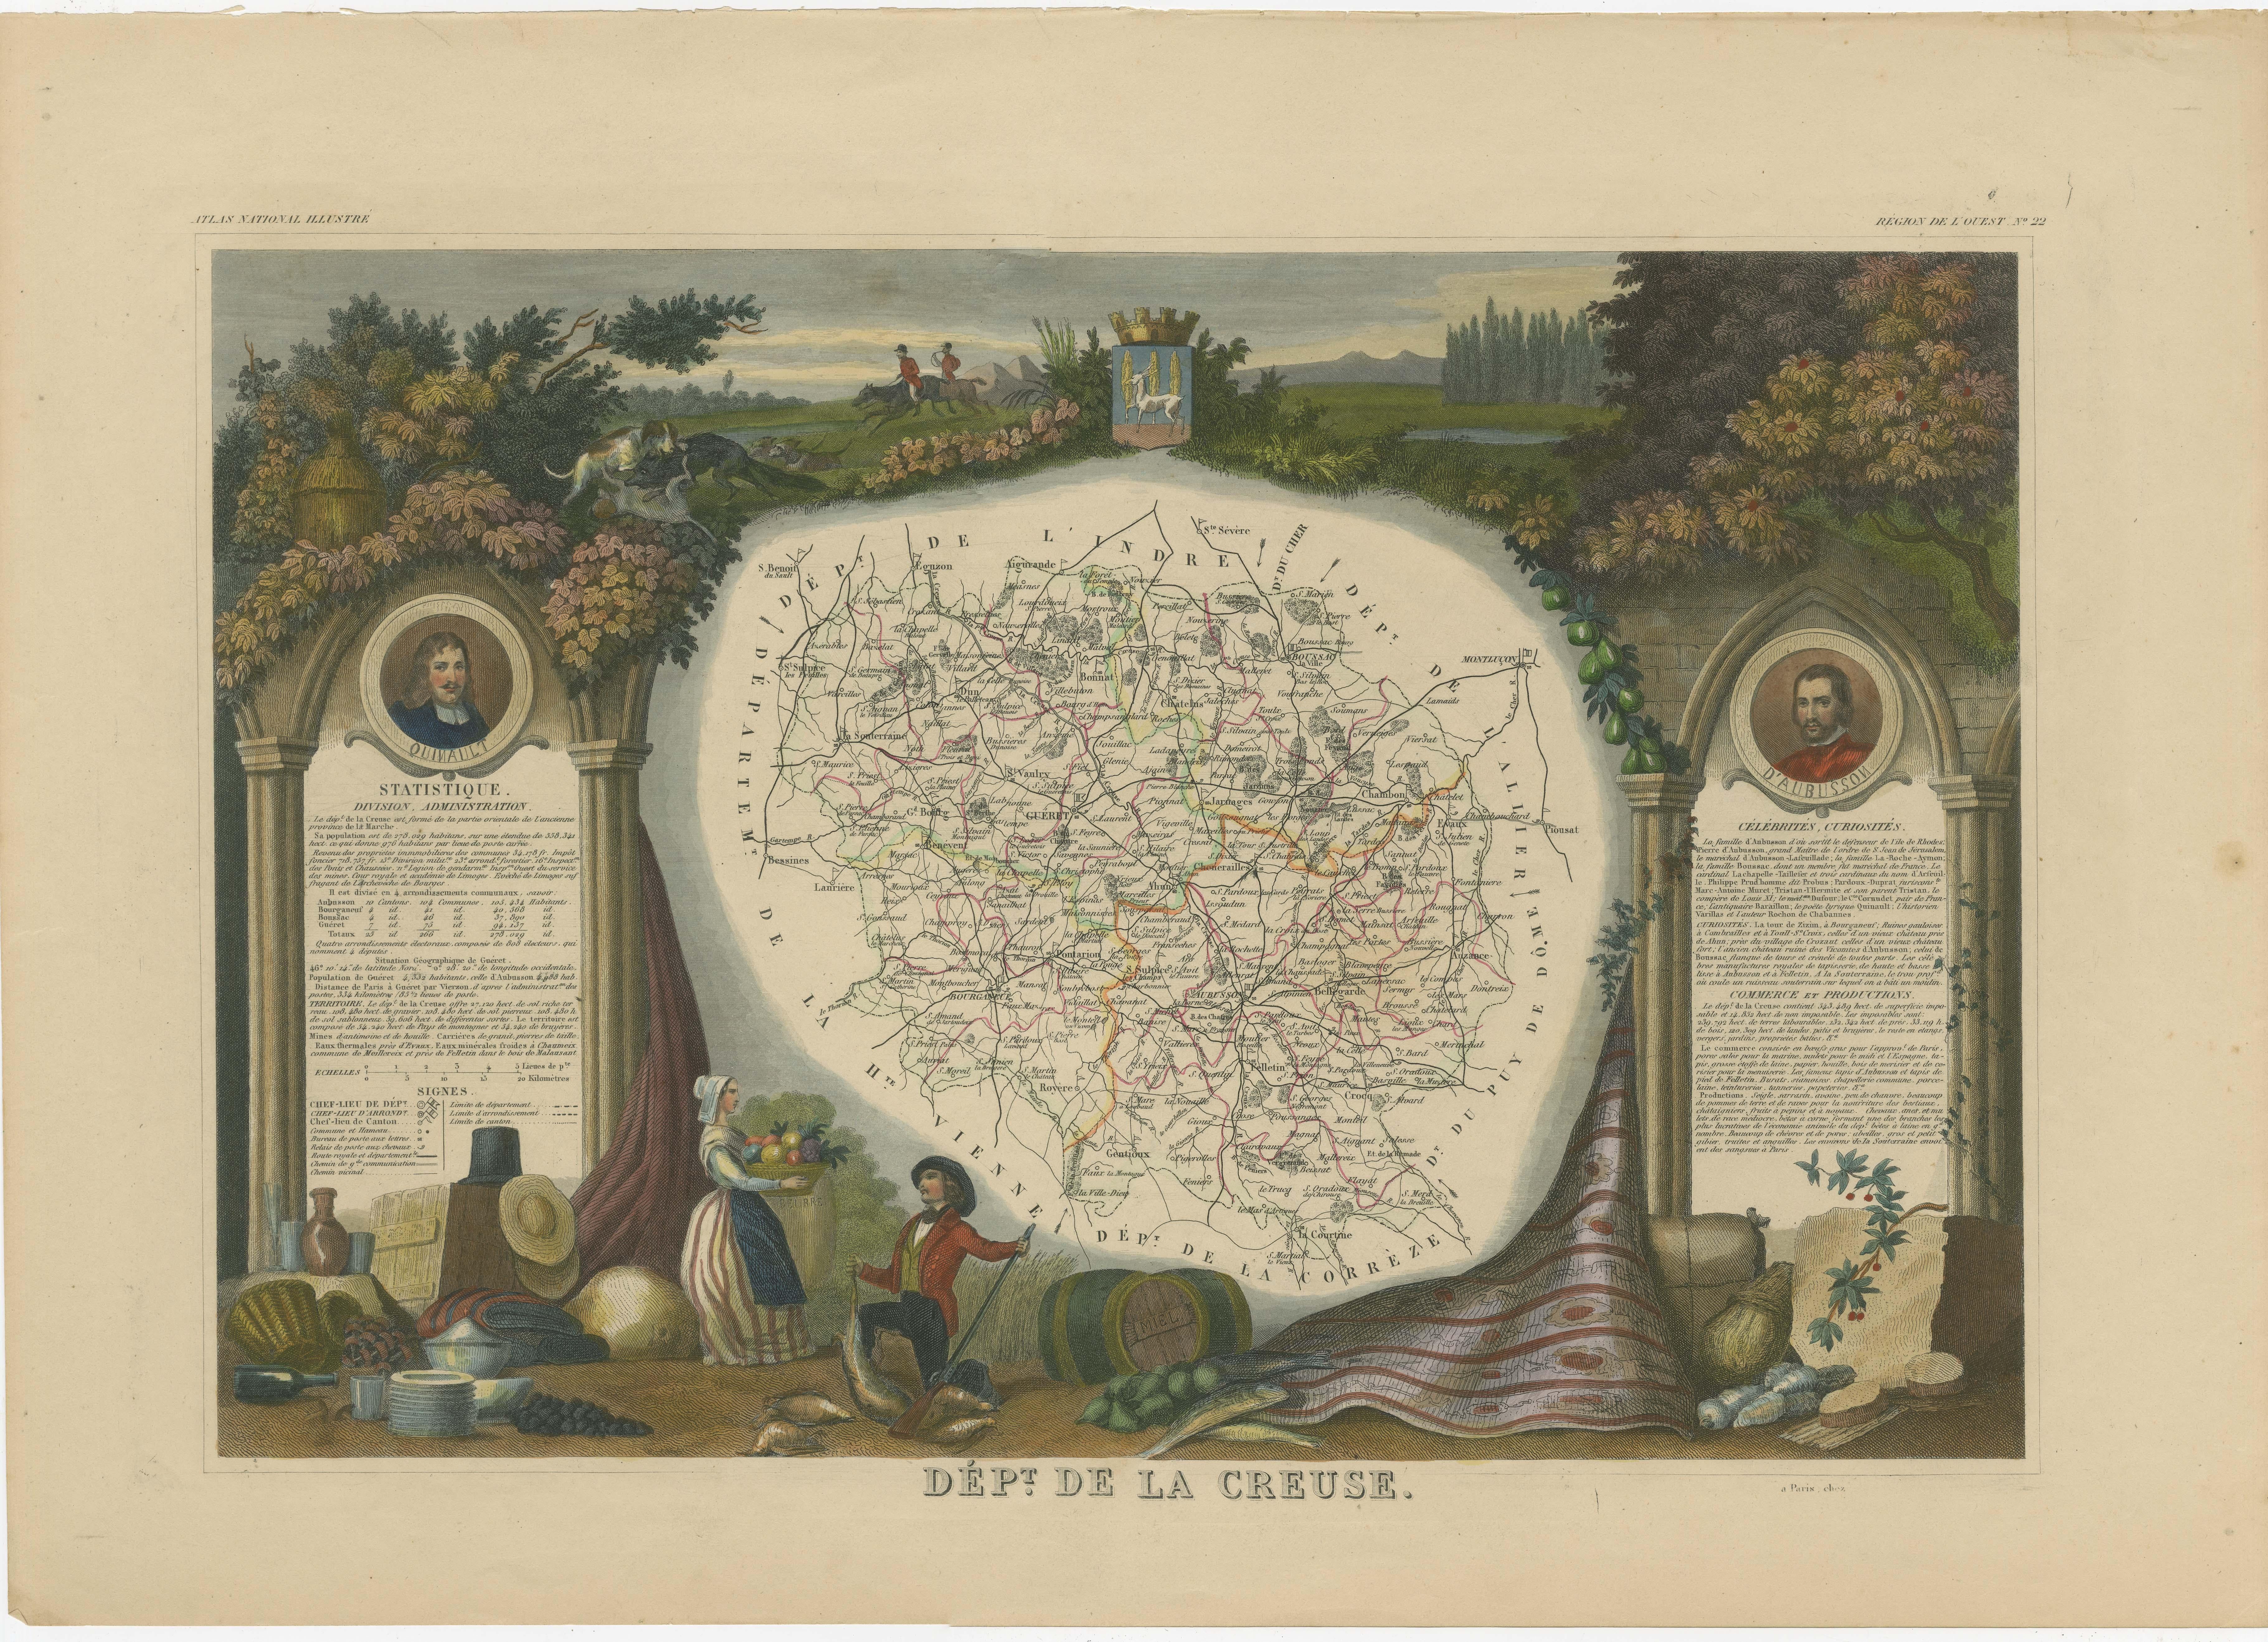 Antike Karte mit dem Titel 'Dépt. de la Creuse'. Karte des französischen Departements Creuse, Frankreich. Die Region ist bekannt für ihren Apfelwein aus Limousin-Äpfeln und das international bekannte Limousin-Rindfleisch. Das Ganze ist von